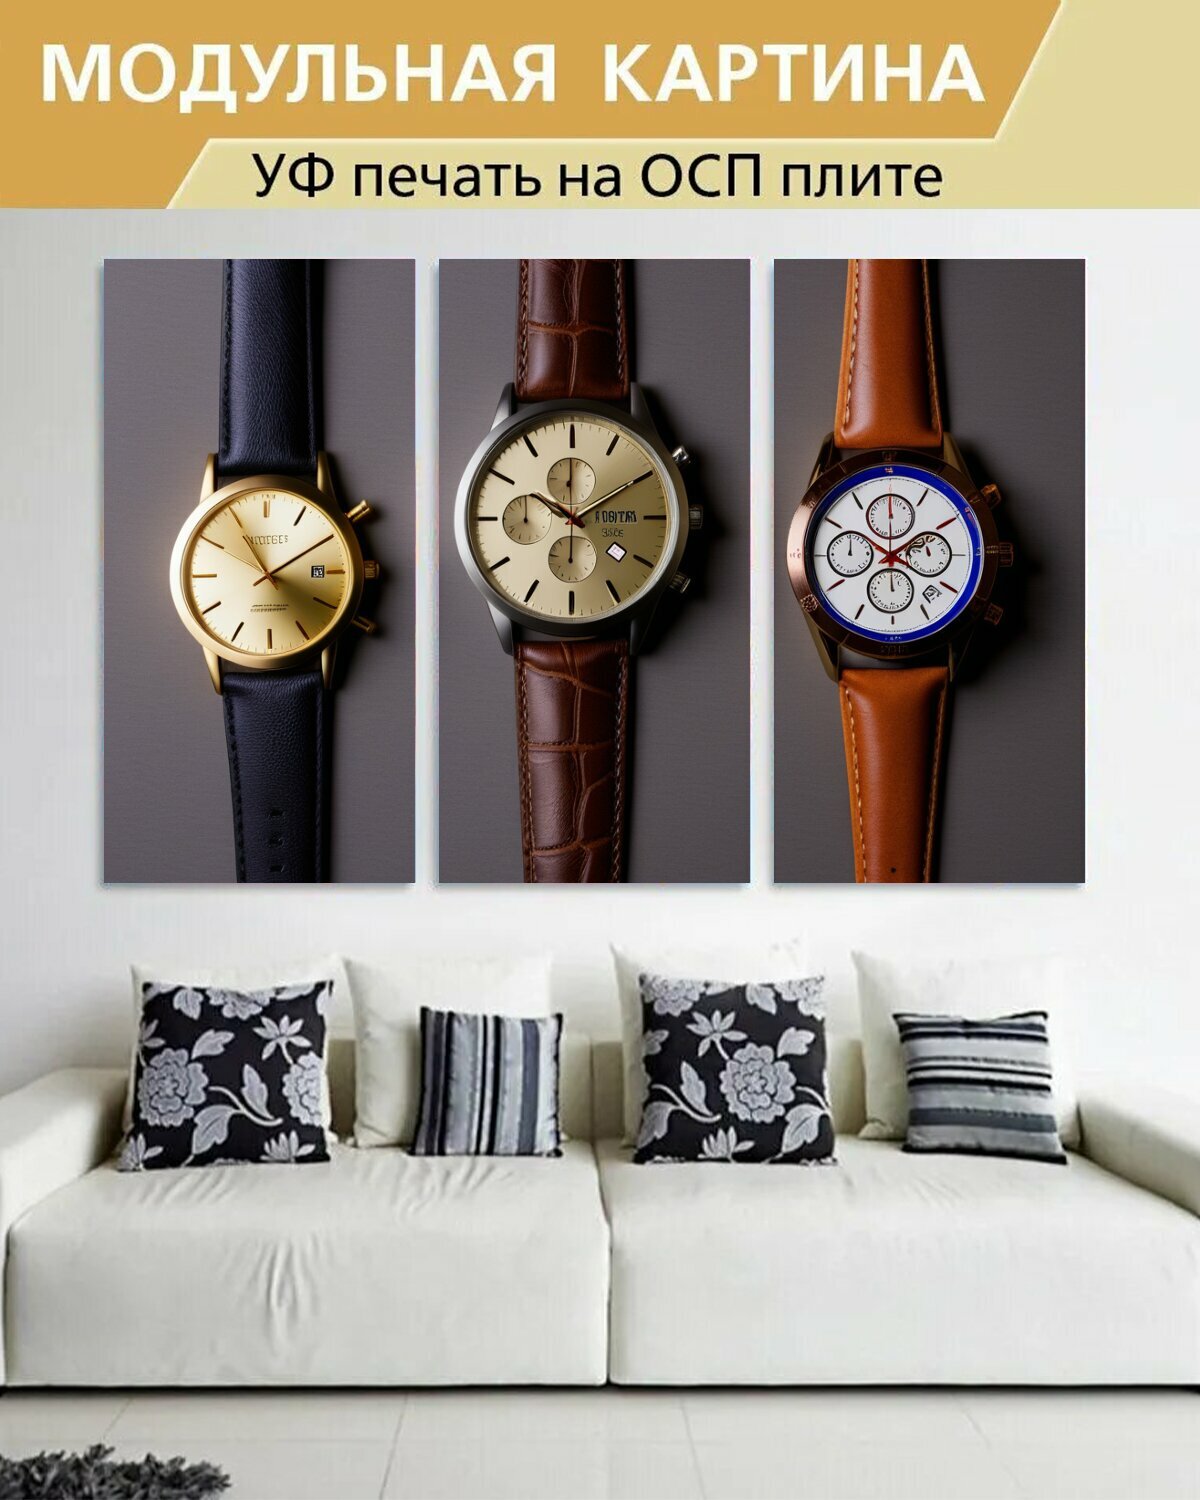 Модульная картина на ОСП любителям часов "Стильные украшения, часы, с ремешками" 188x125 см. 3 части для интерьера на стену